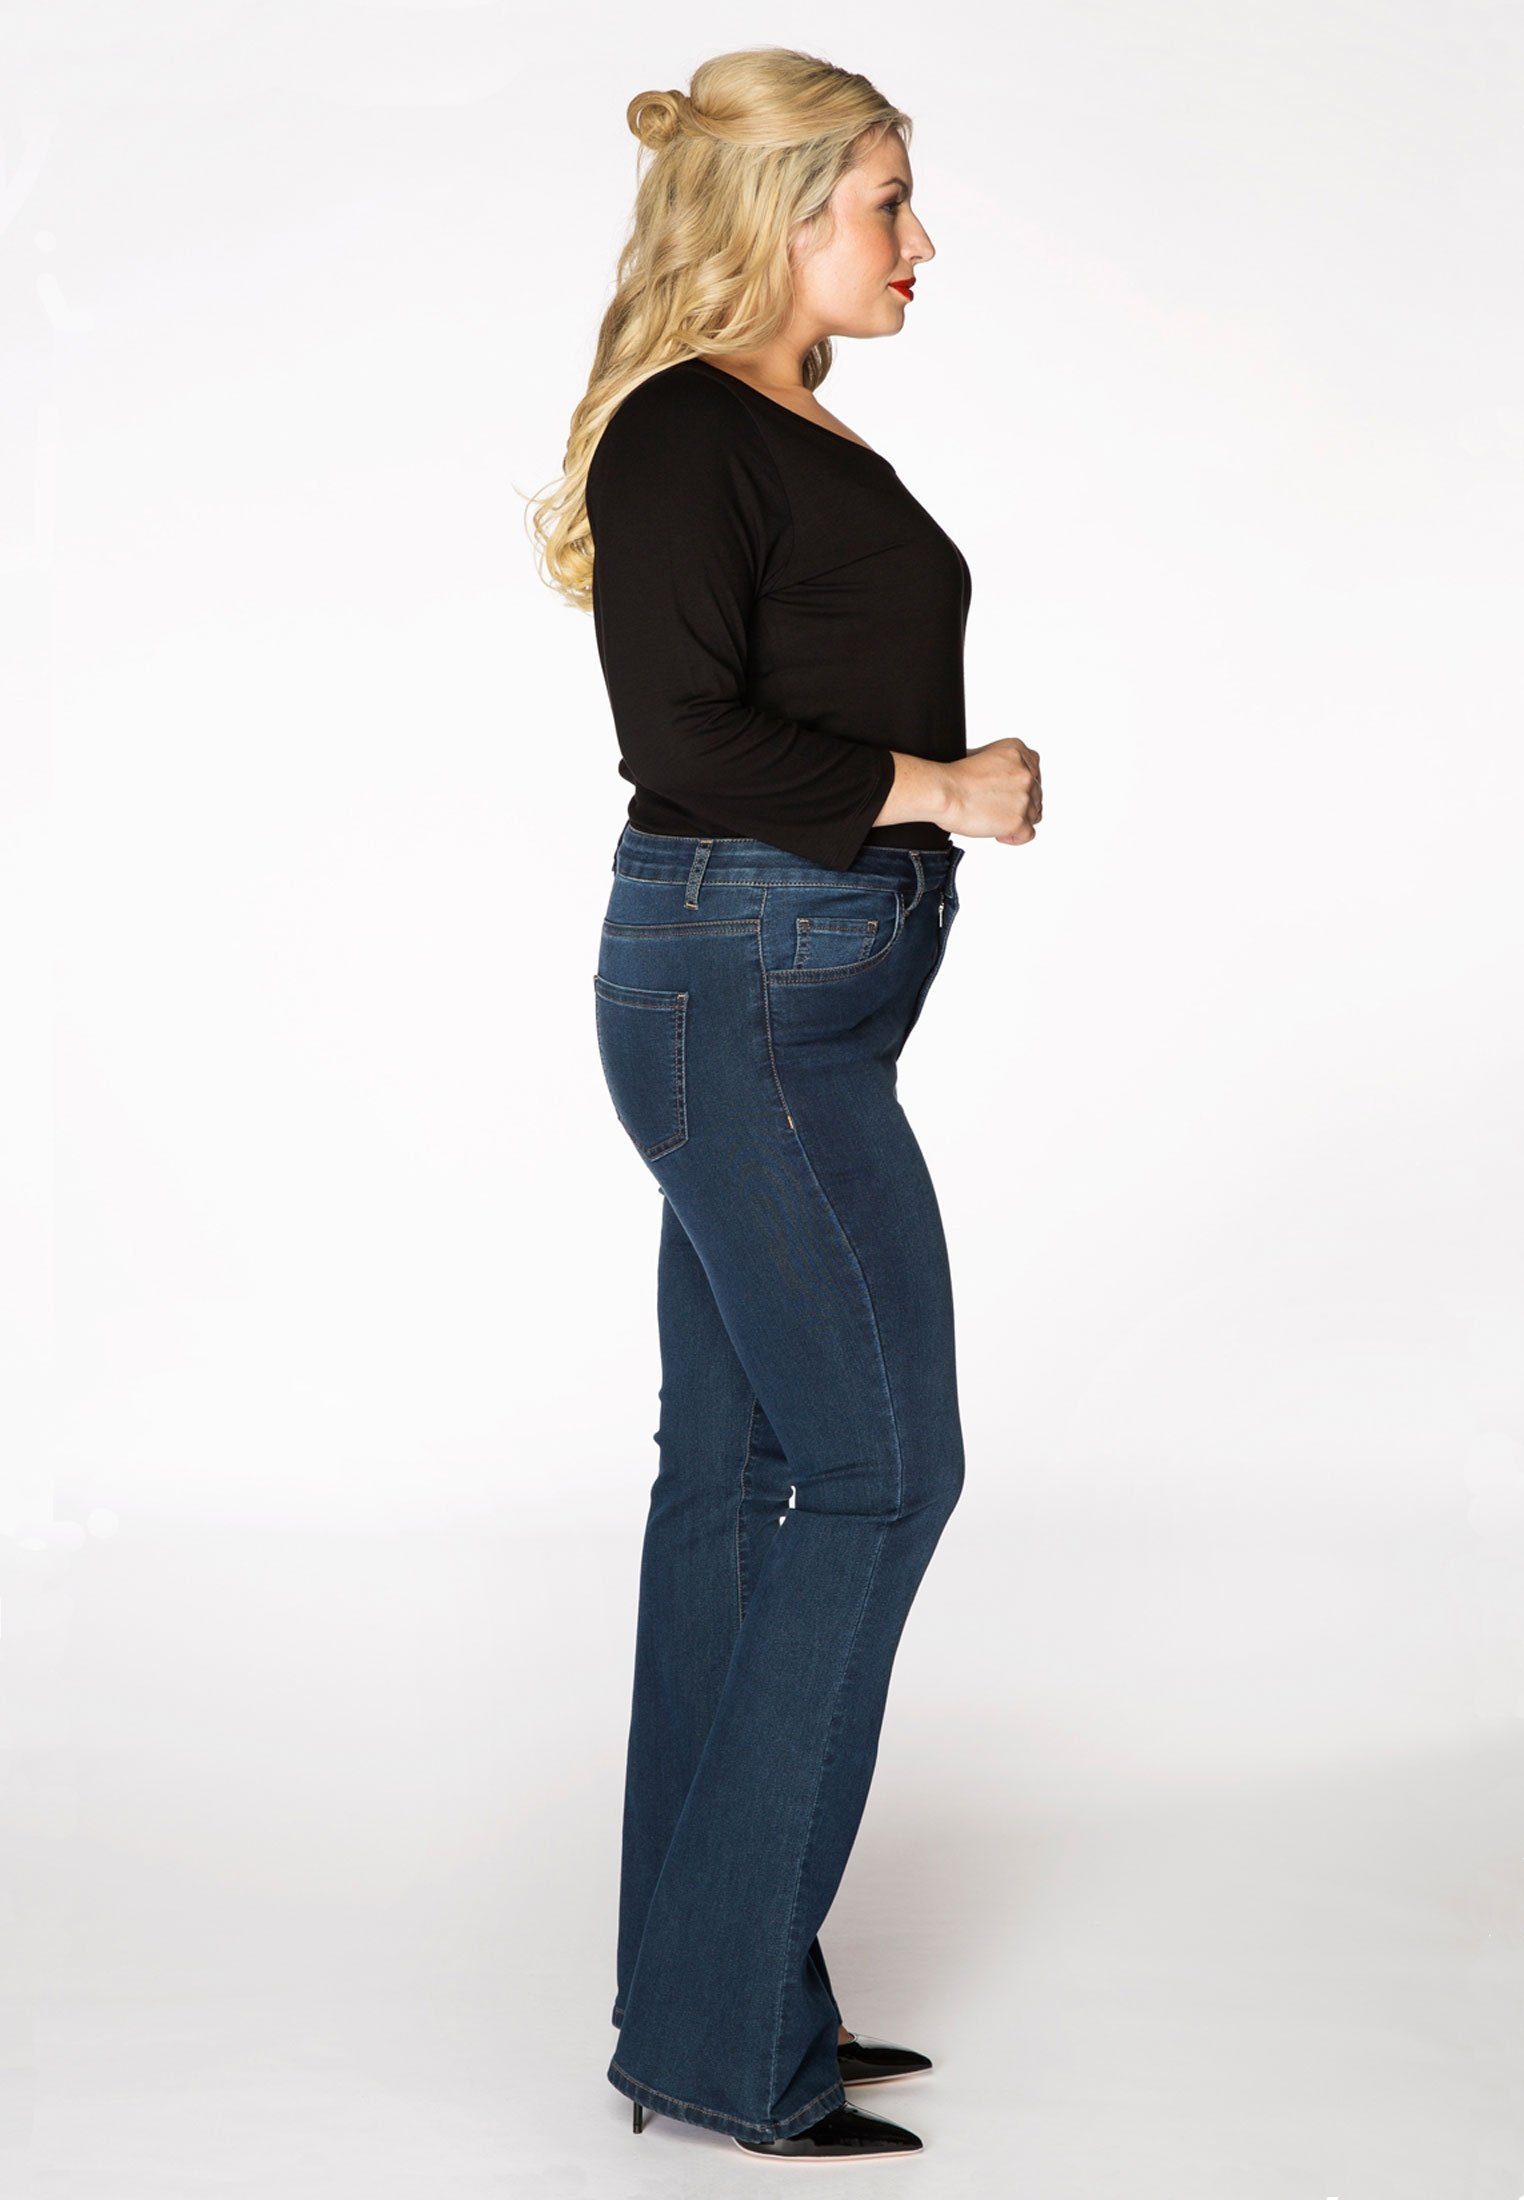 Große Yoek indigo dark High-waist-Jeans Größen